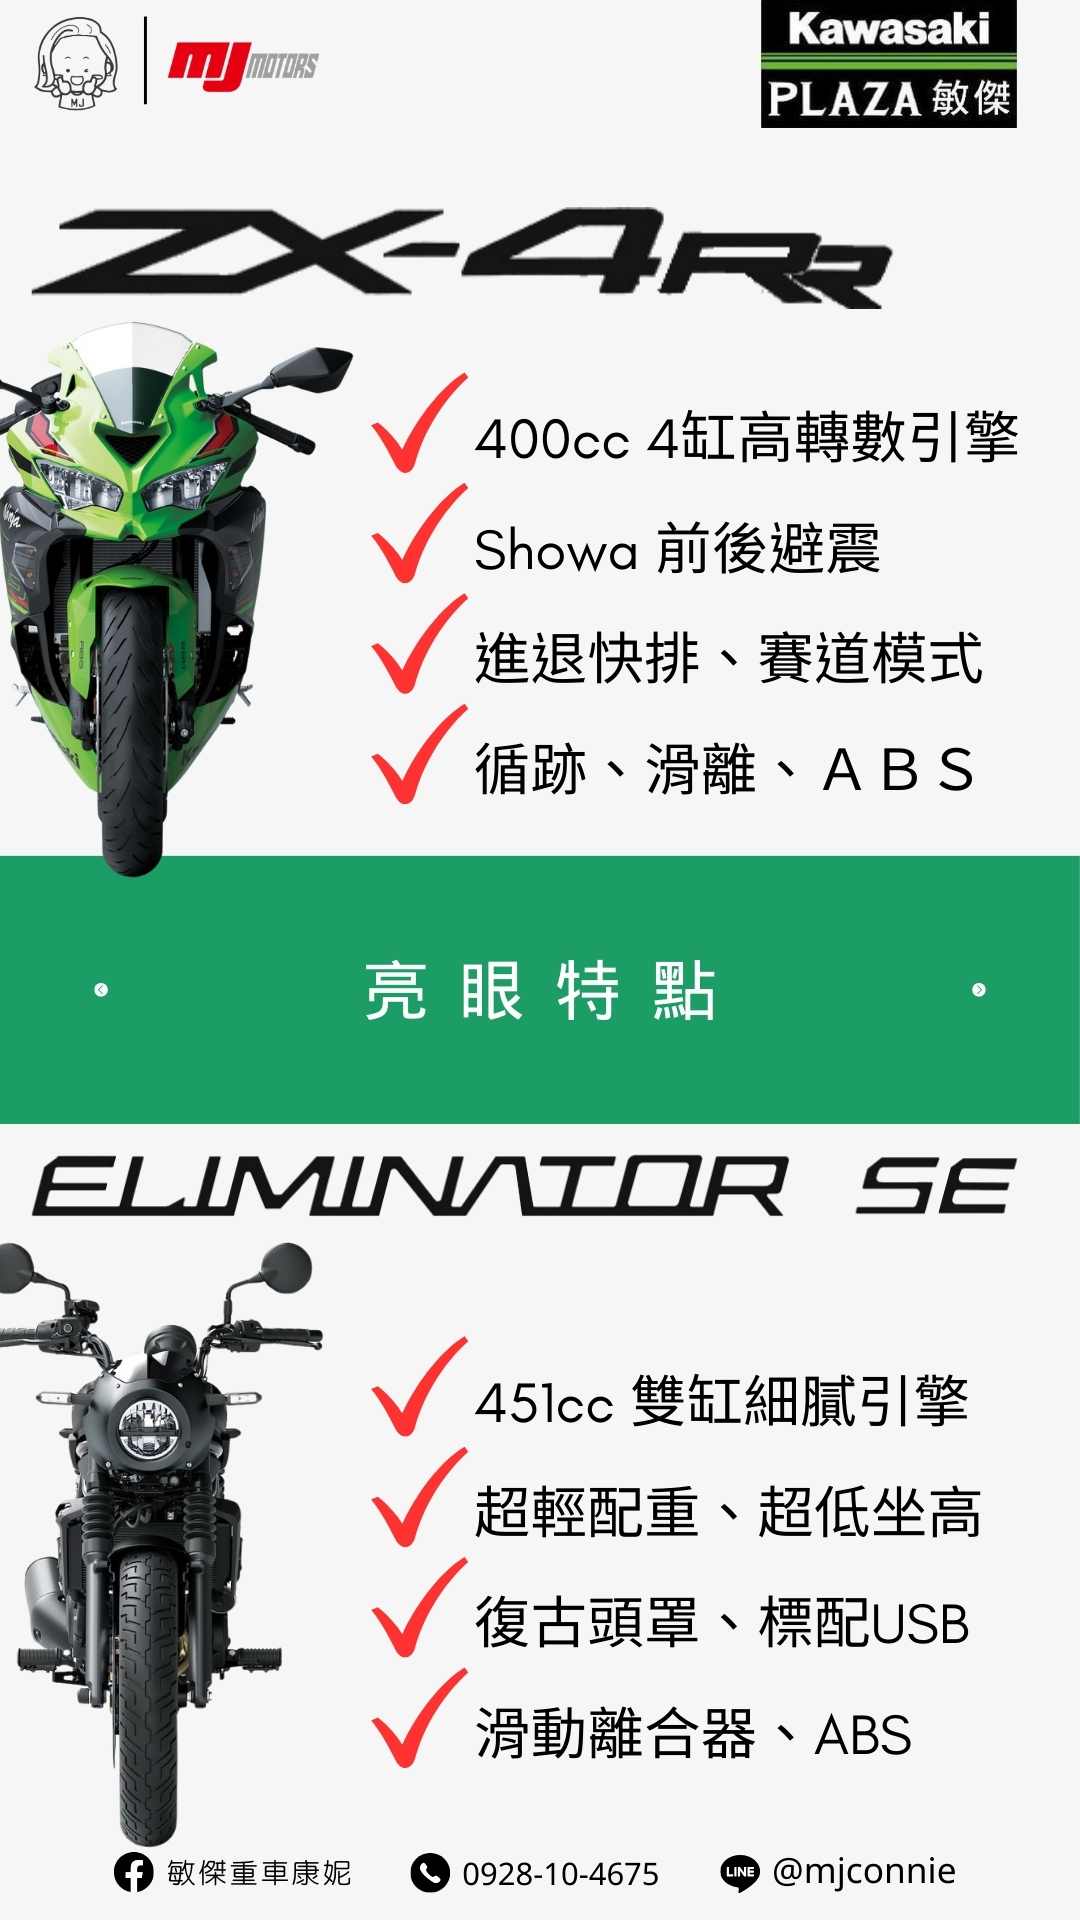 Kawasaki ZX-4RR新車出售中 『敏傑康妮』Kawasaki ZX-4RR & Eliminator 500SE 持需接單預訂中 把握現在的好康～ 月付 63xx 起 | 敏傑車業資深銷售專員 康妮 Connie